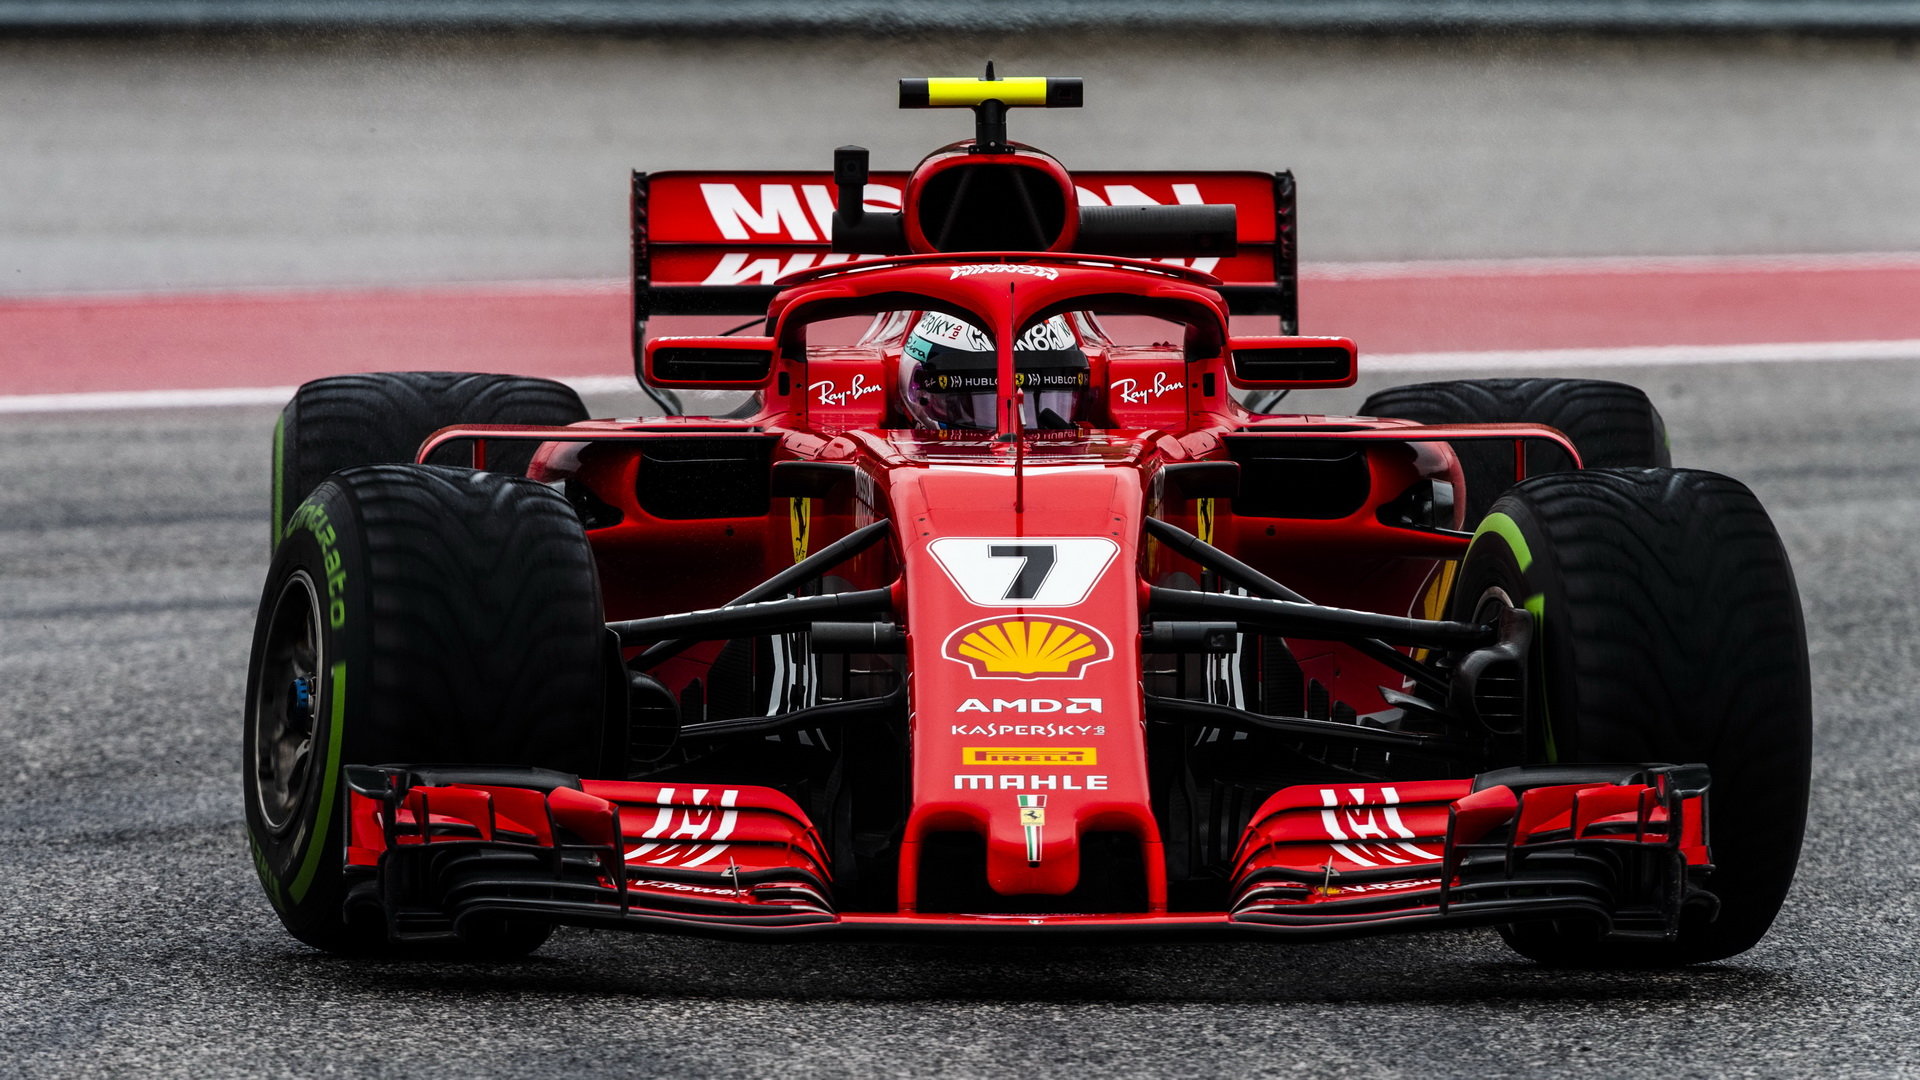 Kimi Räikkönen vítězstvím ve Velké ceně Spojených států 2018 ukázal, že je stále ve formě